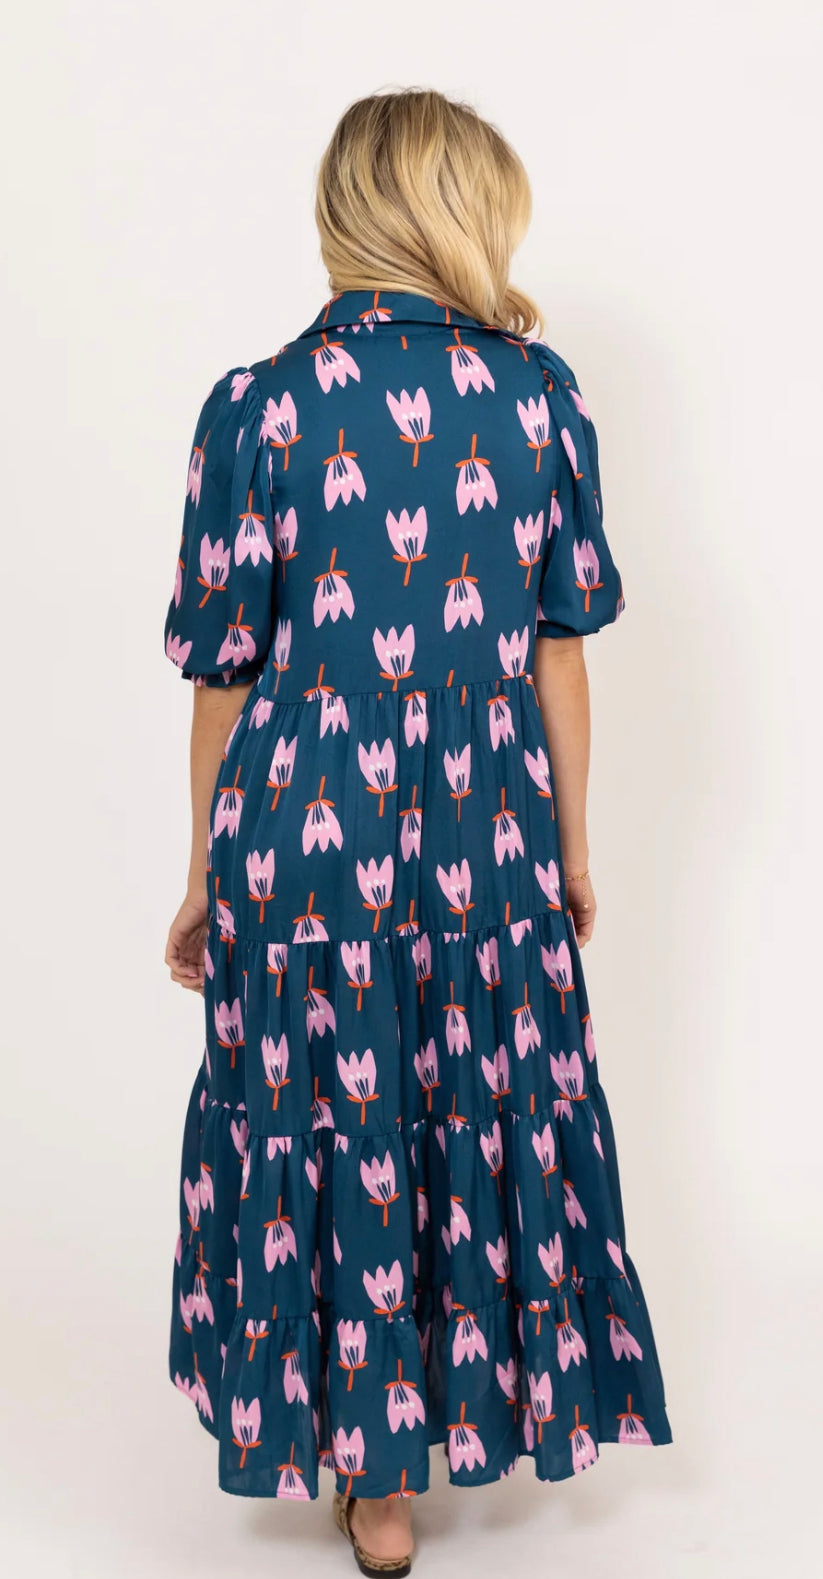 Poppy Satin Tier Maxi Dress by Karlie